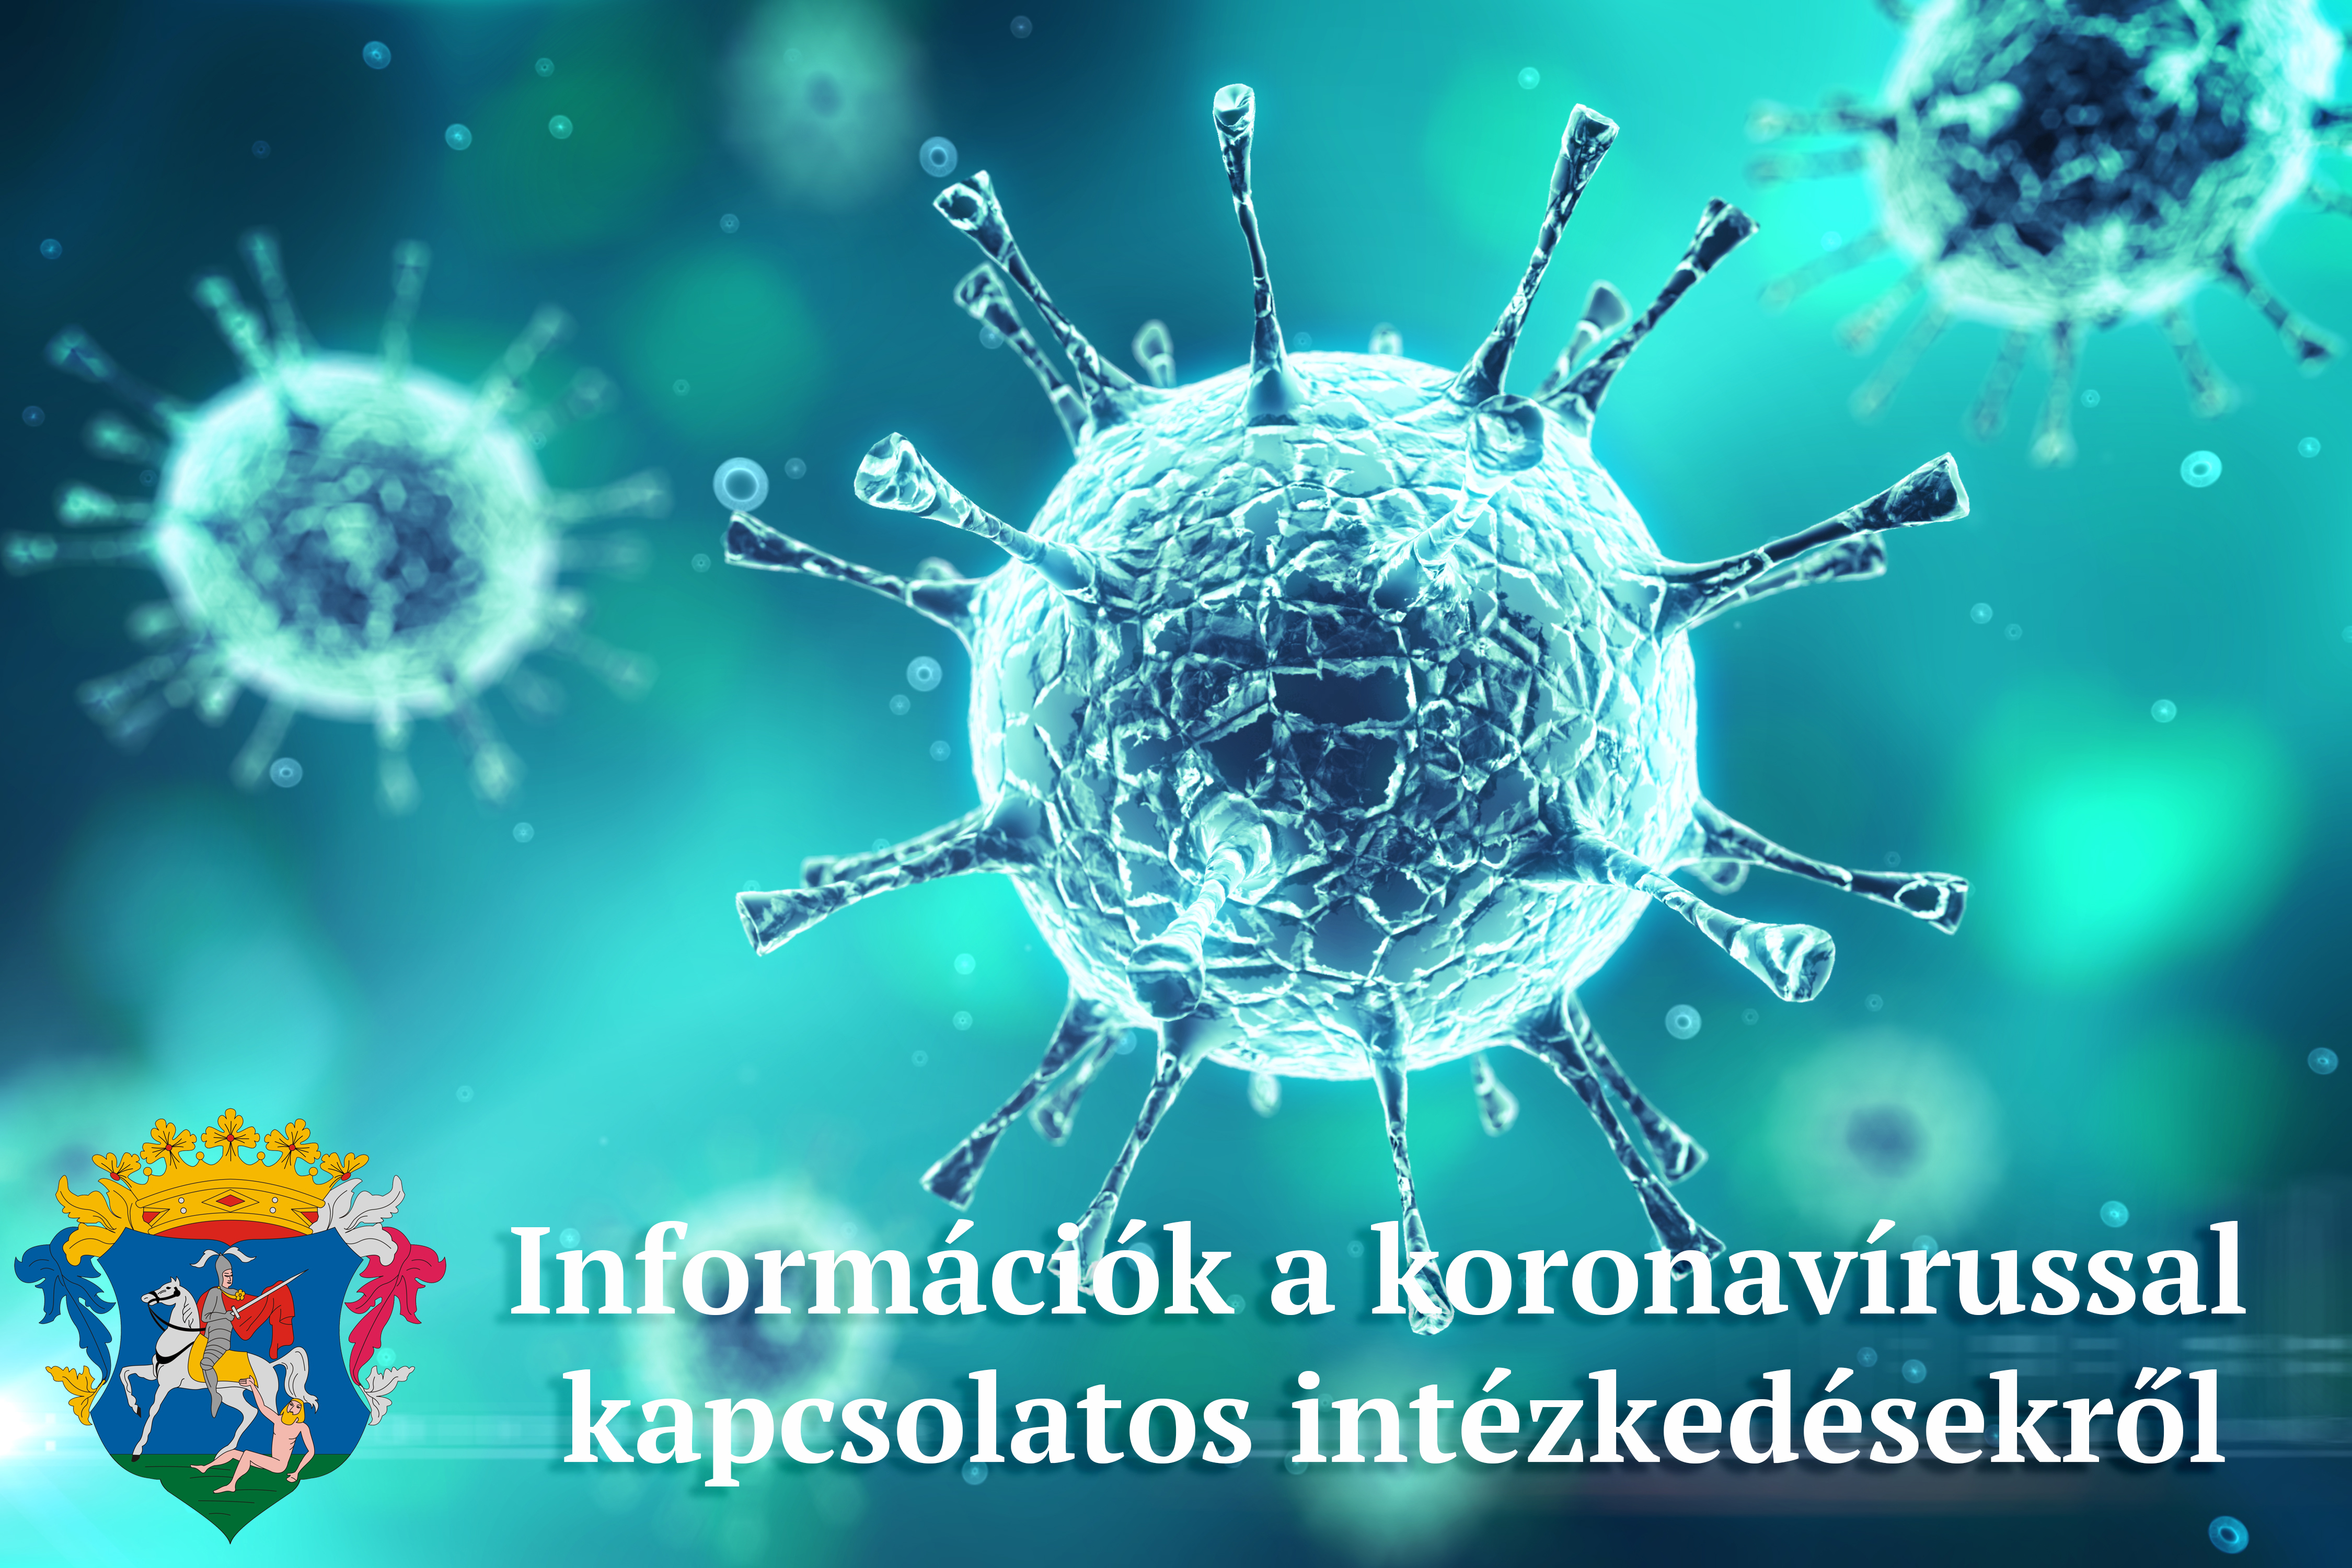 információk a koronavírussal kapcsolatos intézkedésekről, döntésekről 2021. február 4-10 között